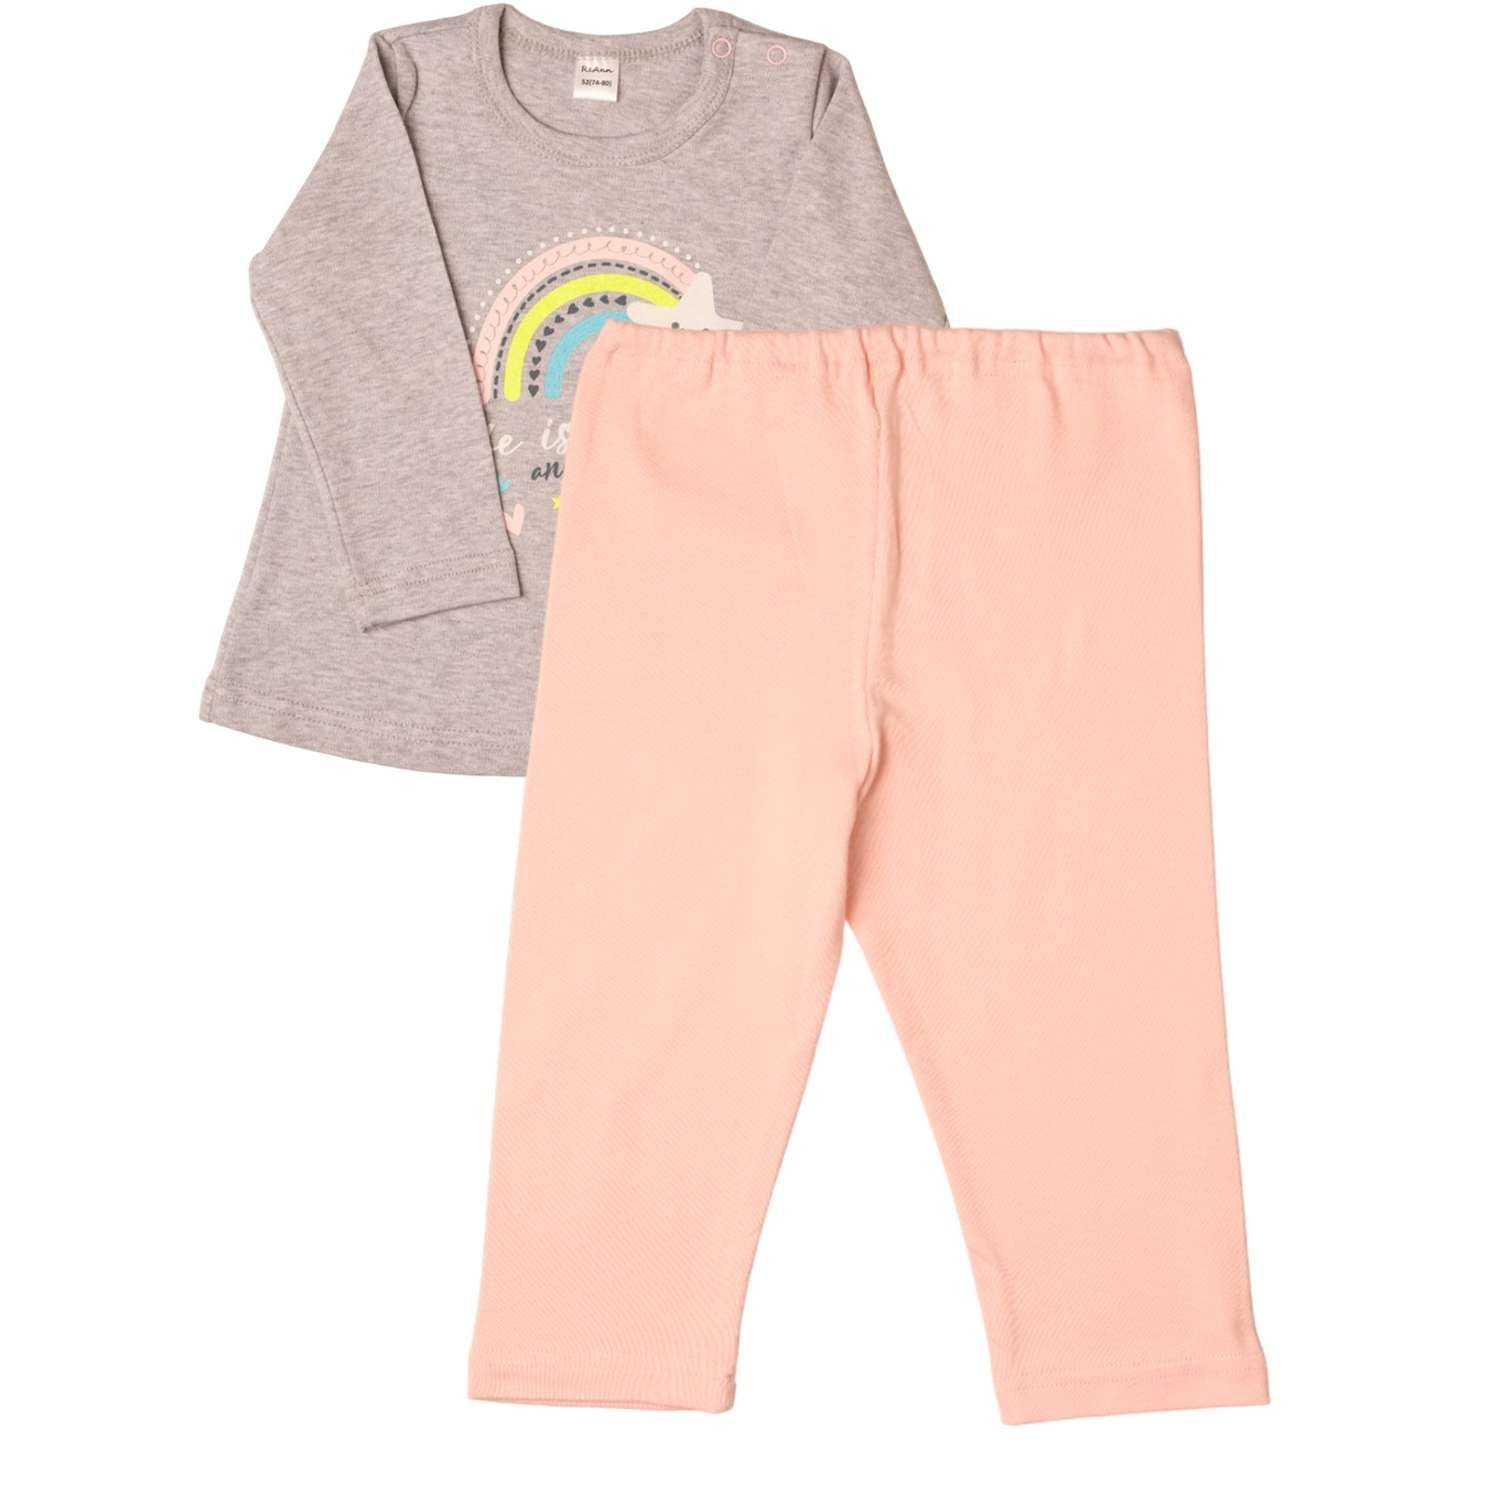 Лонгслив и брюки ReAnn Комплект Радуга серый розовый - фото 3